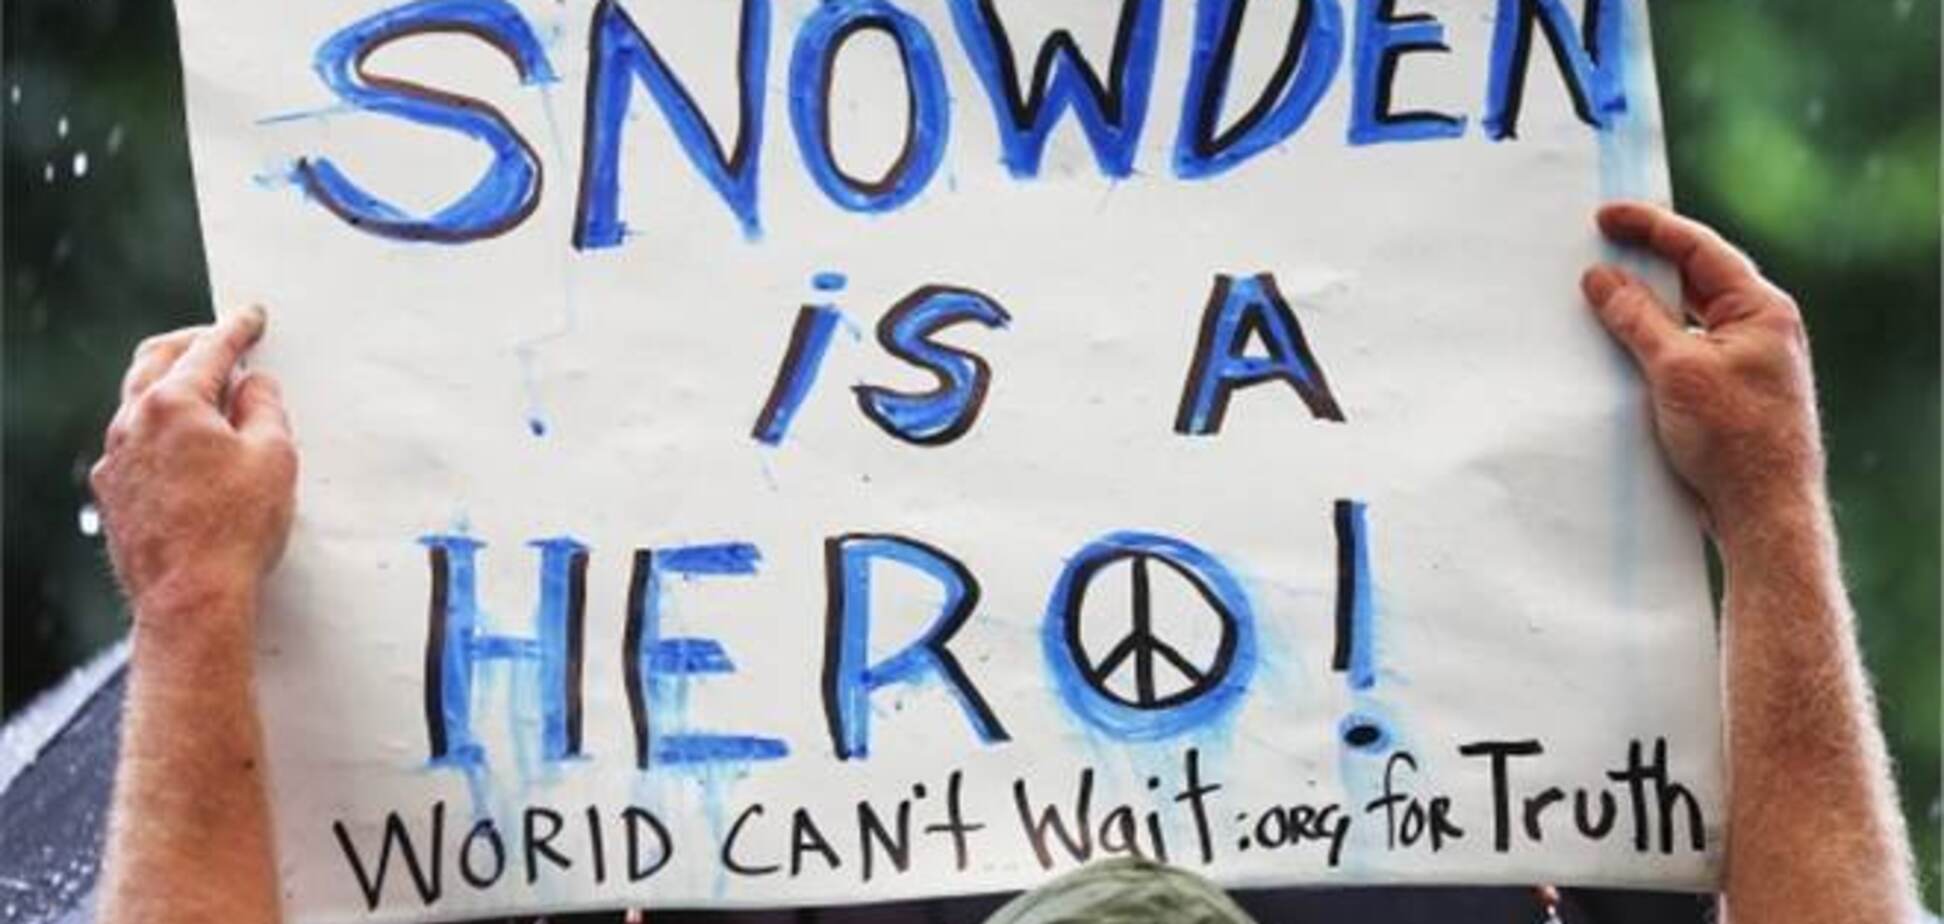 США не могут определить, какие данные попали к Сноудену - источник